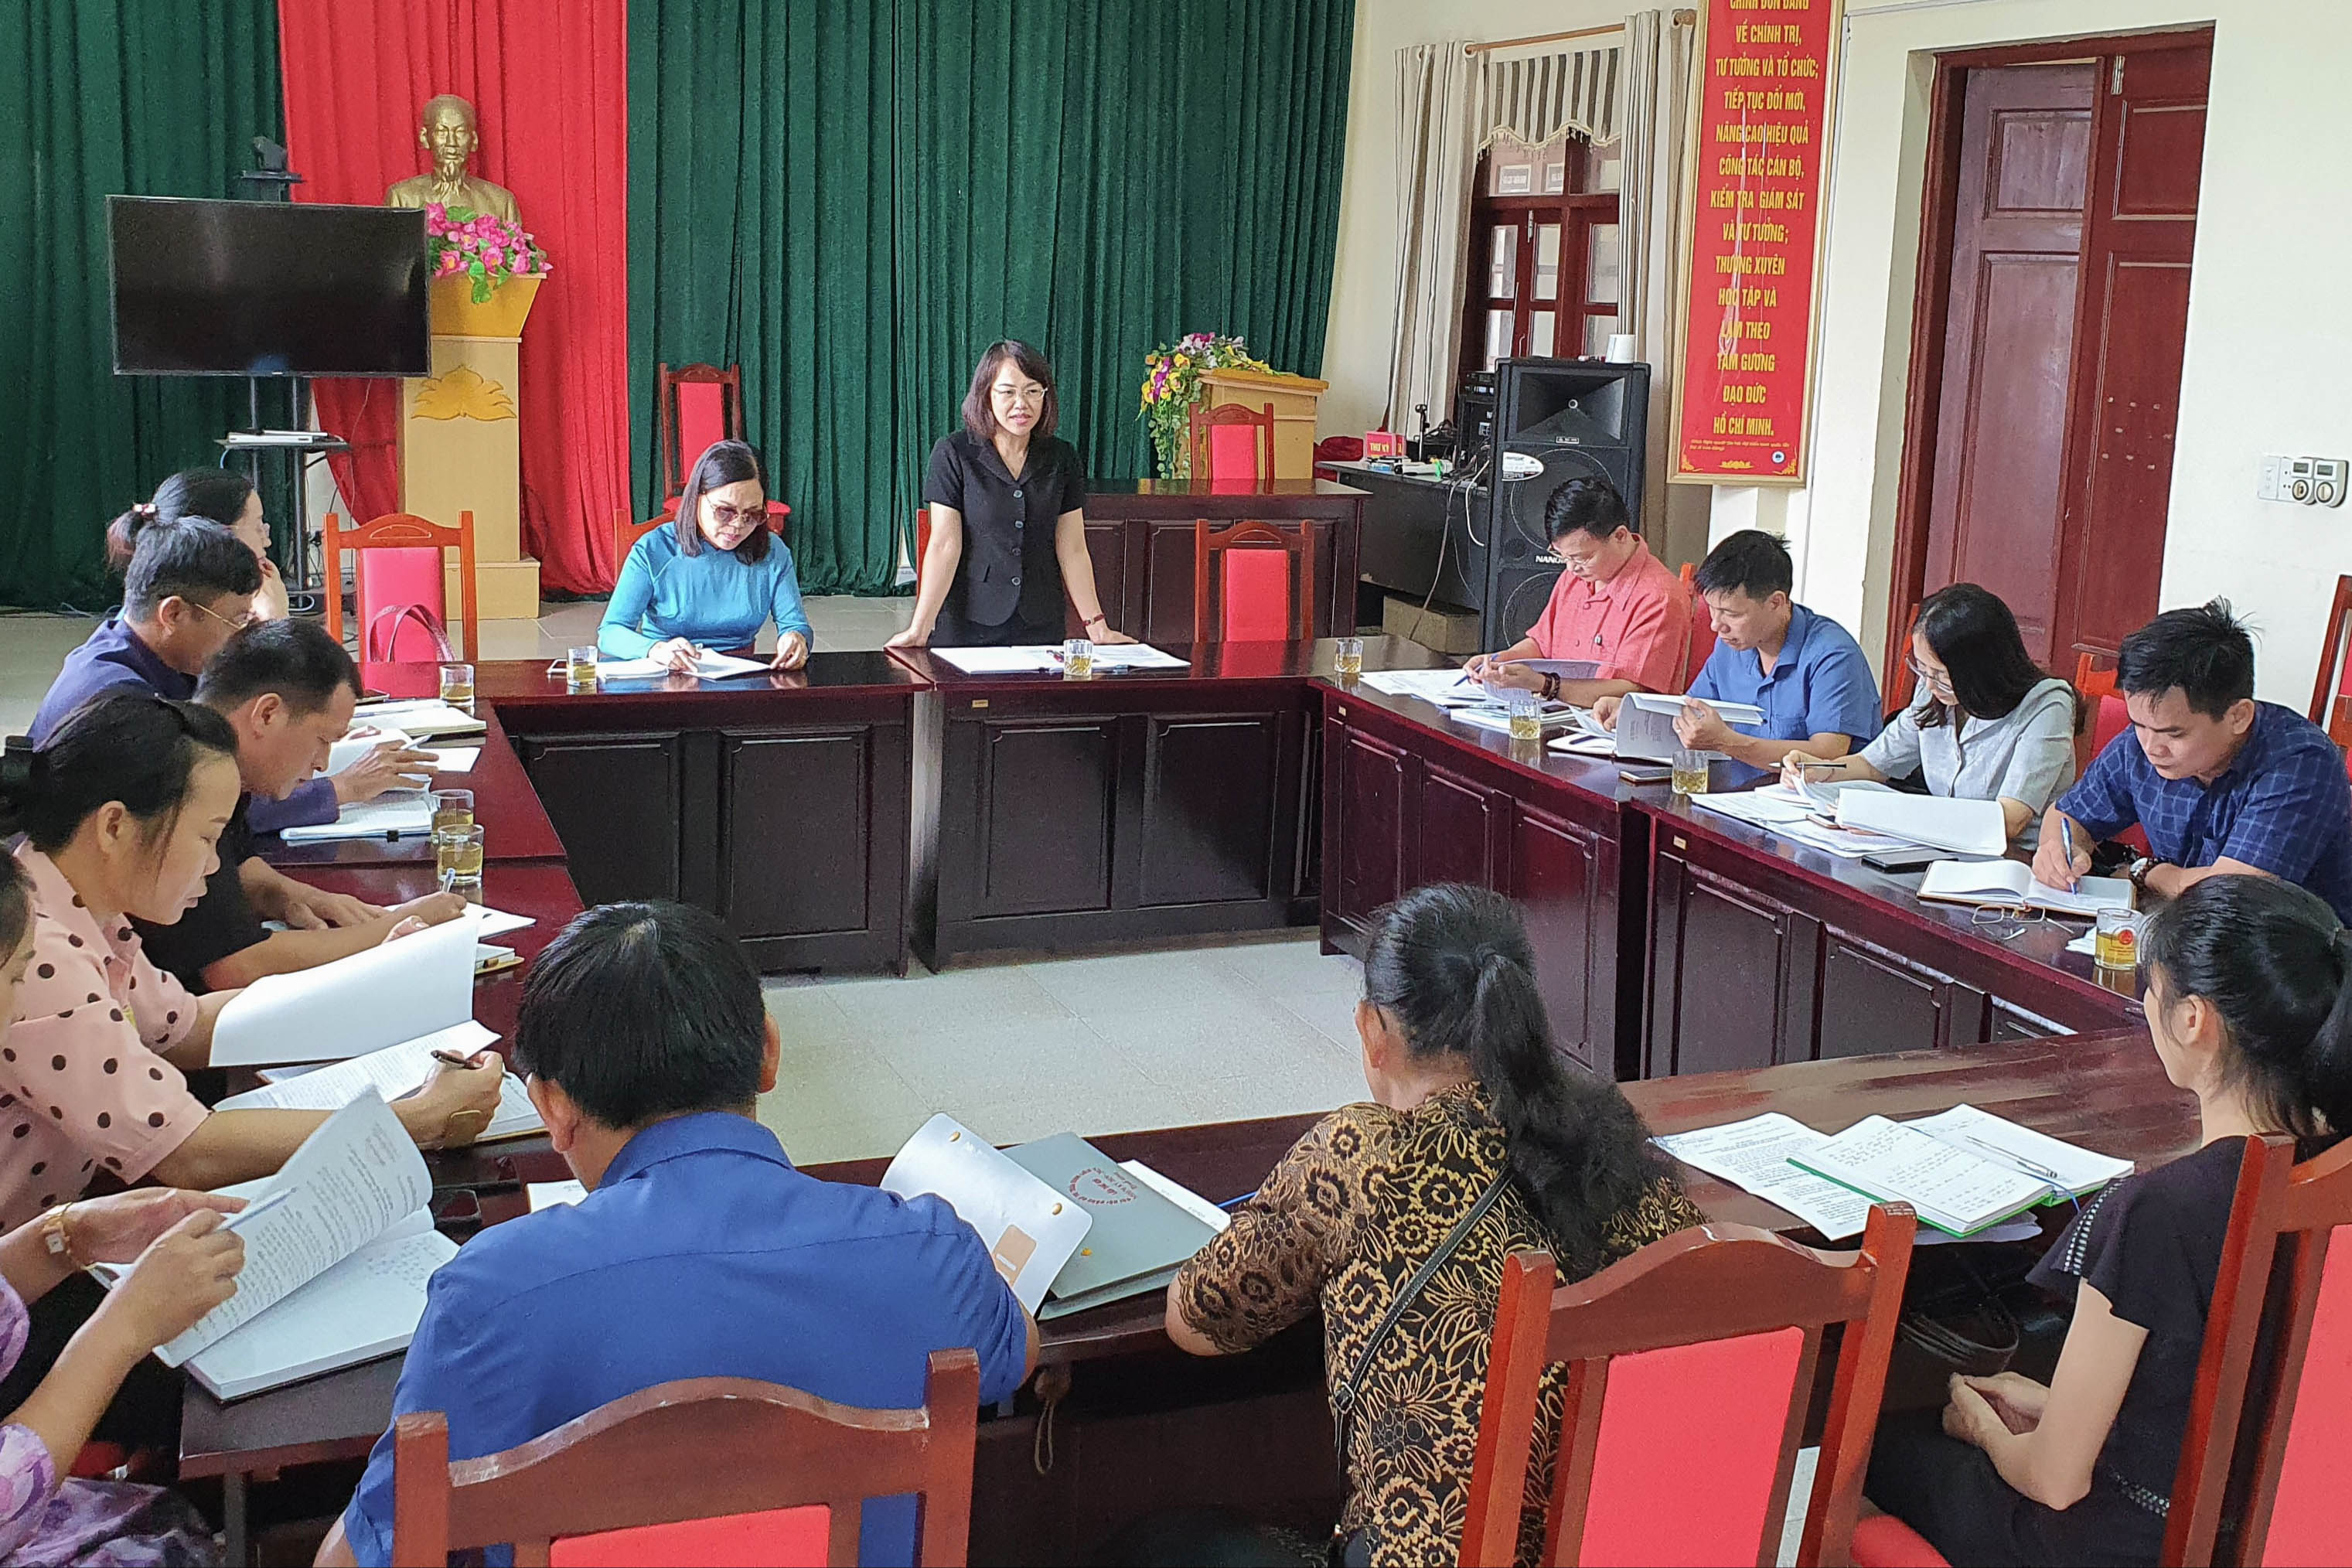 Đoàn công tác của Ủy ban MTTQ tỉnh làm việc với UBND thị trấn Bình Liêu, huyện Bình Liêu, để giám sát việc thực hiện các giải pháp nâng cao Chỉ số hiệu quả quản trị và hành chính công cấp tỉnh (Chỉ số PAPI).